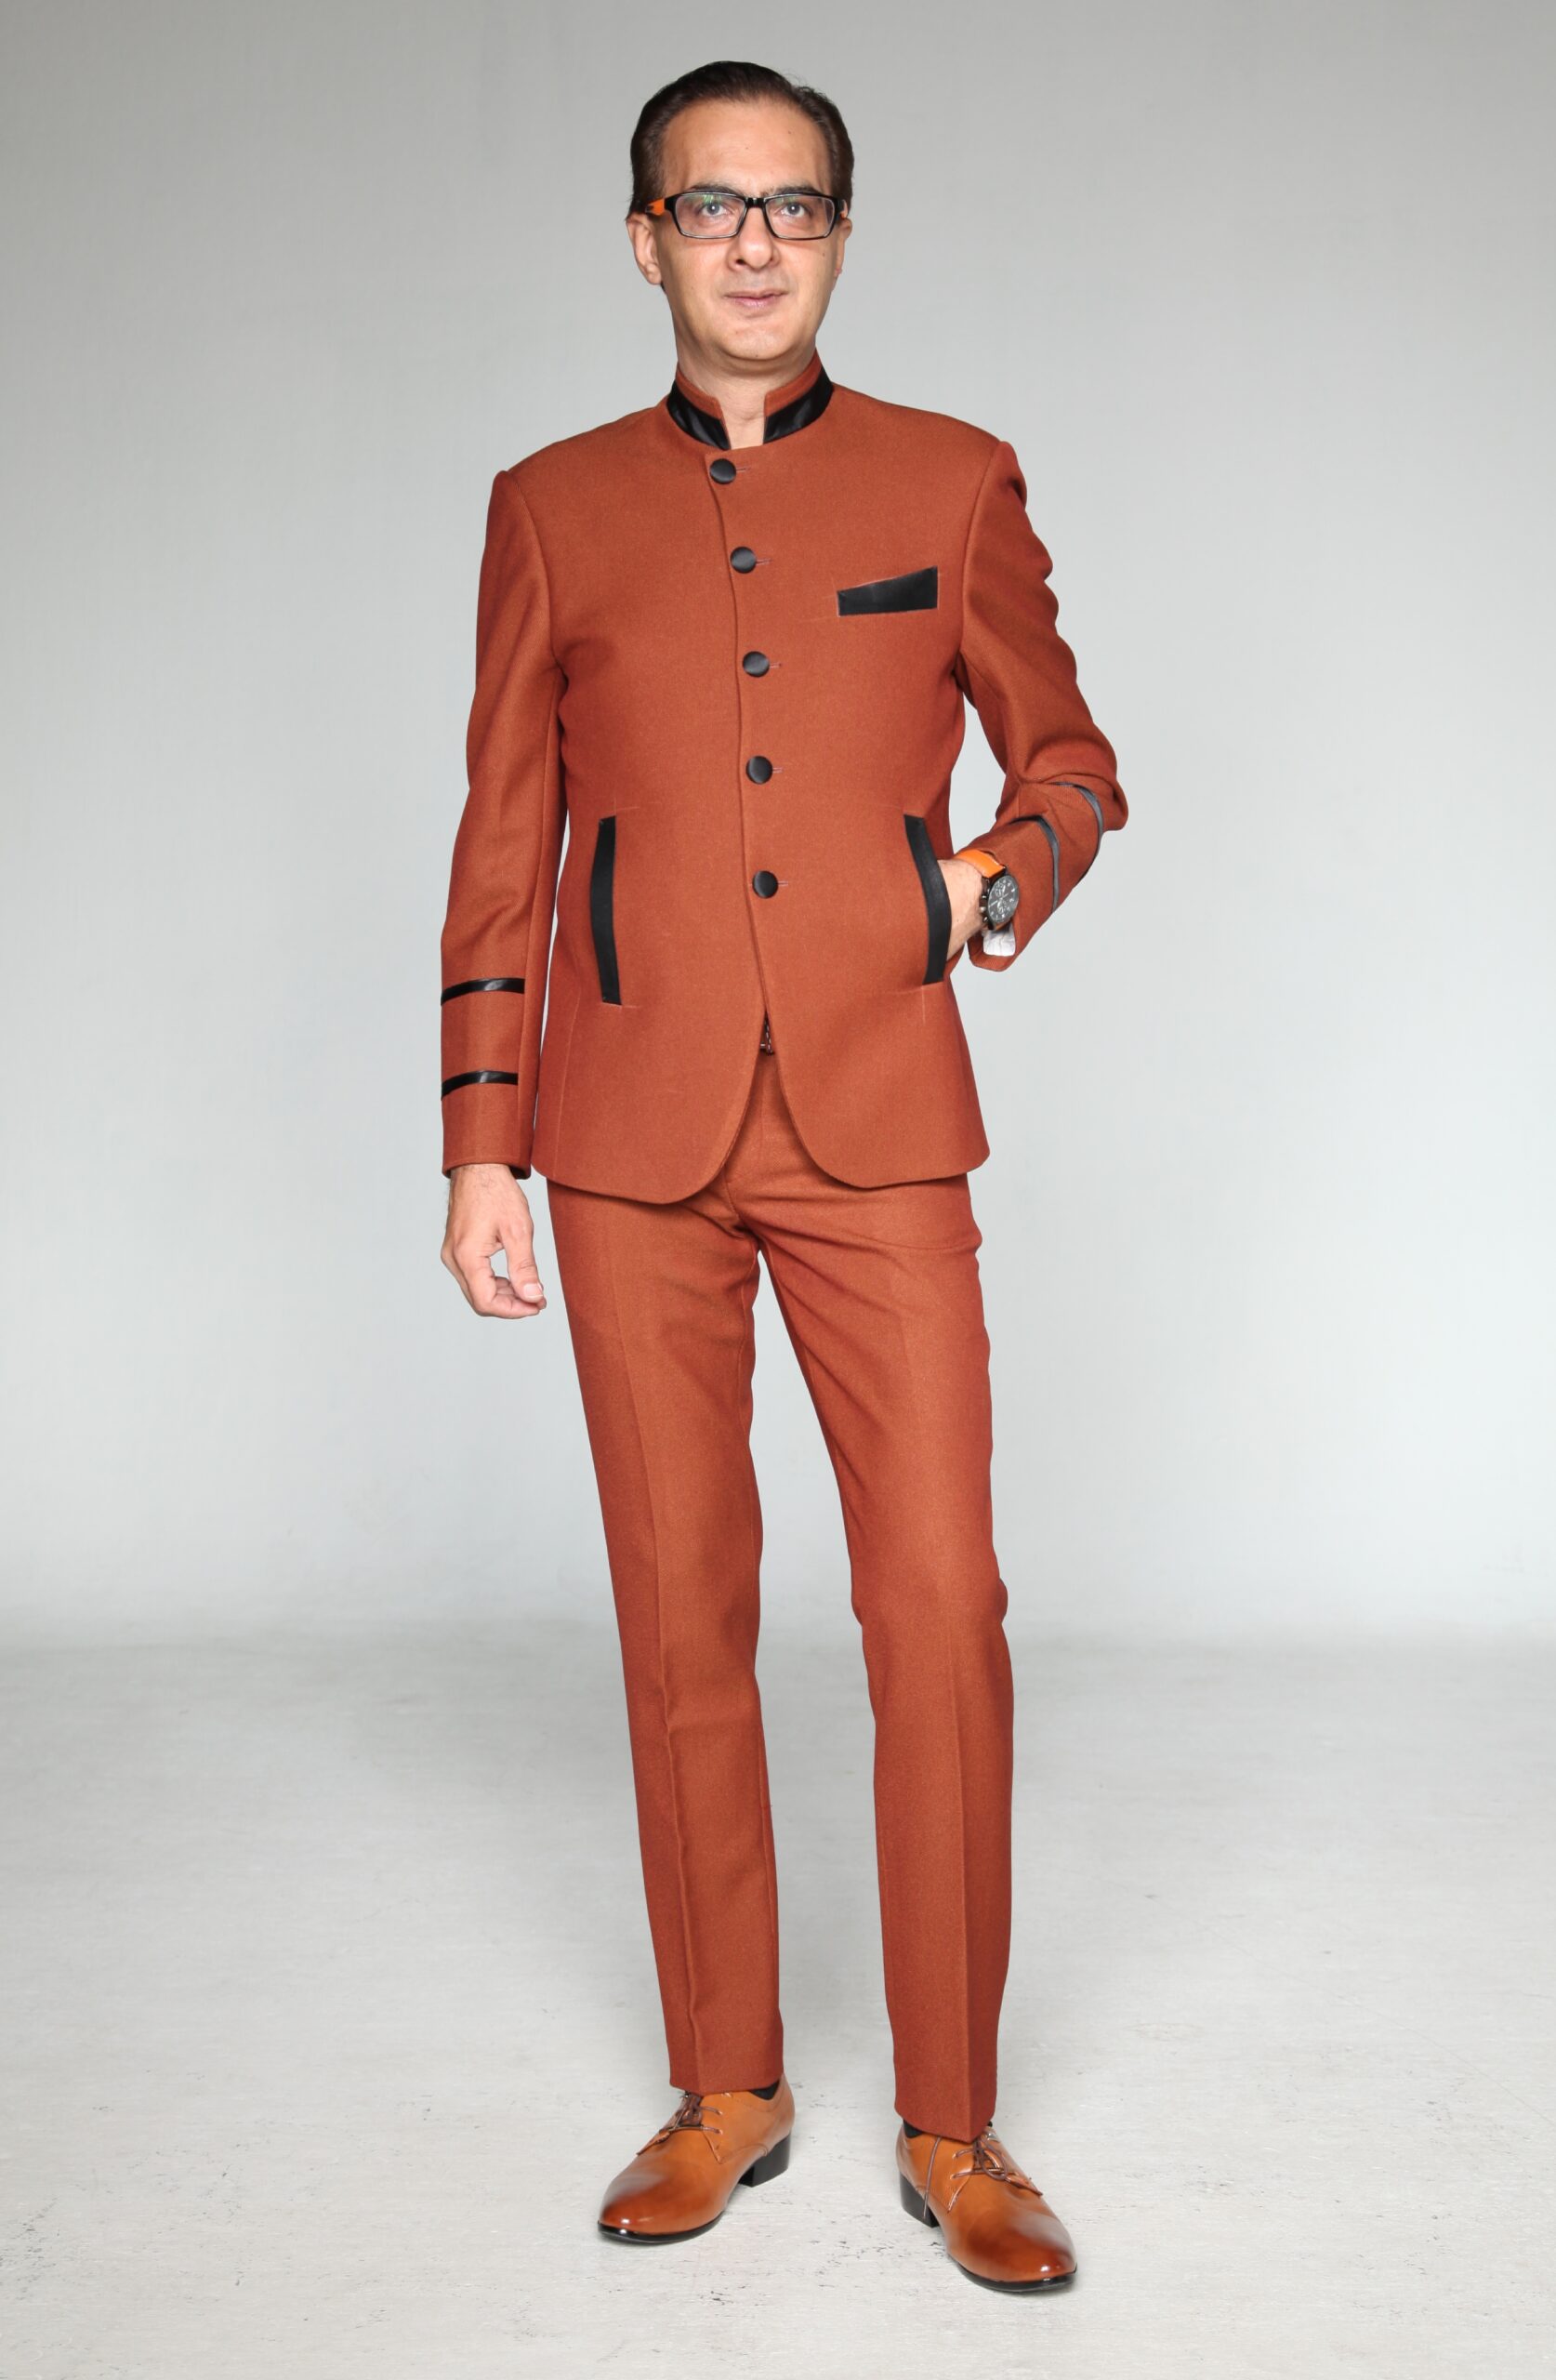 Mst 5036 02 Rent Rental Hire Tuxedo Suit Black Tie Suit Designer Suits Shop Tailor Tailors Singapore Wedding